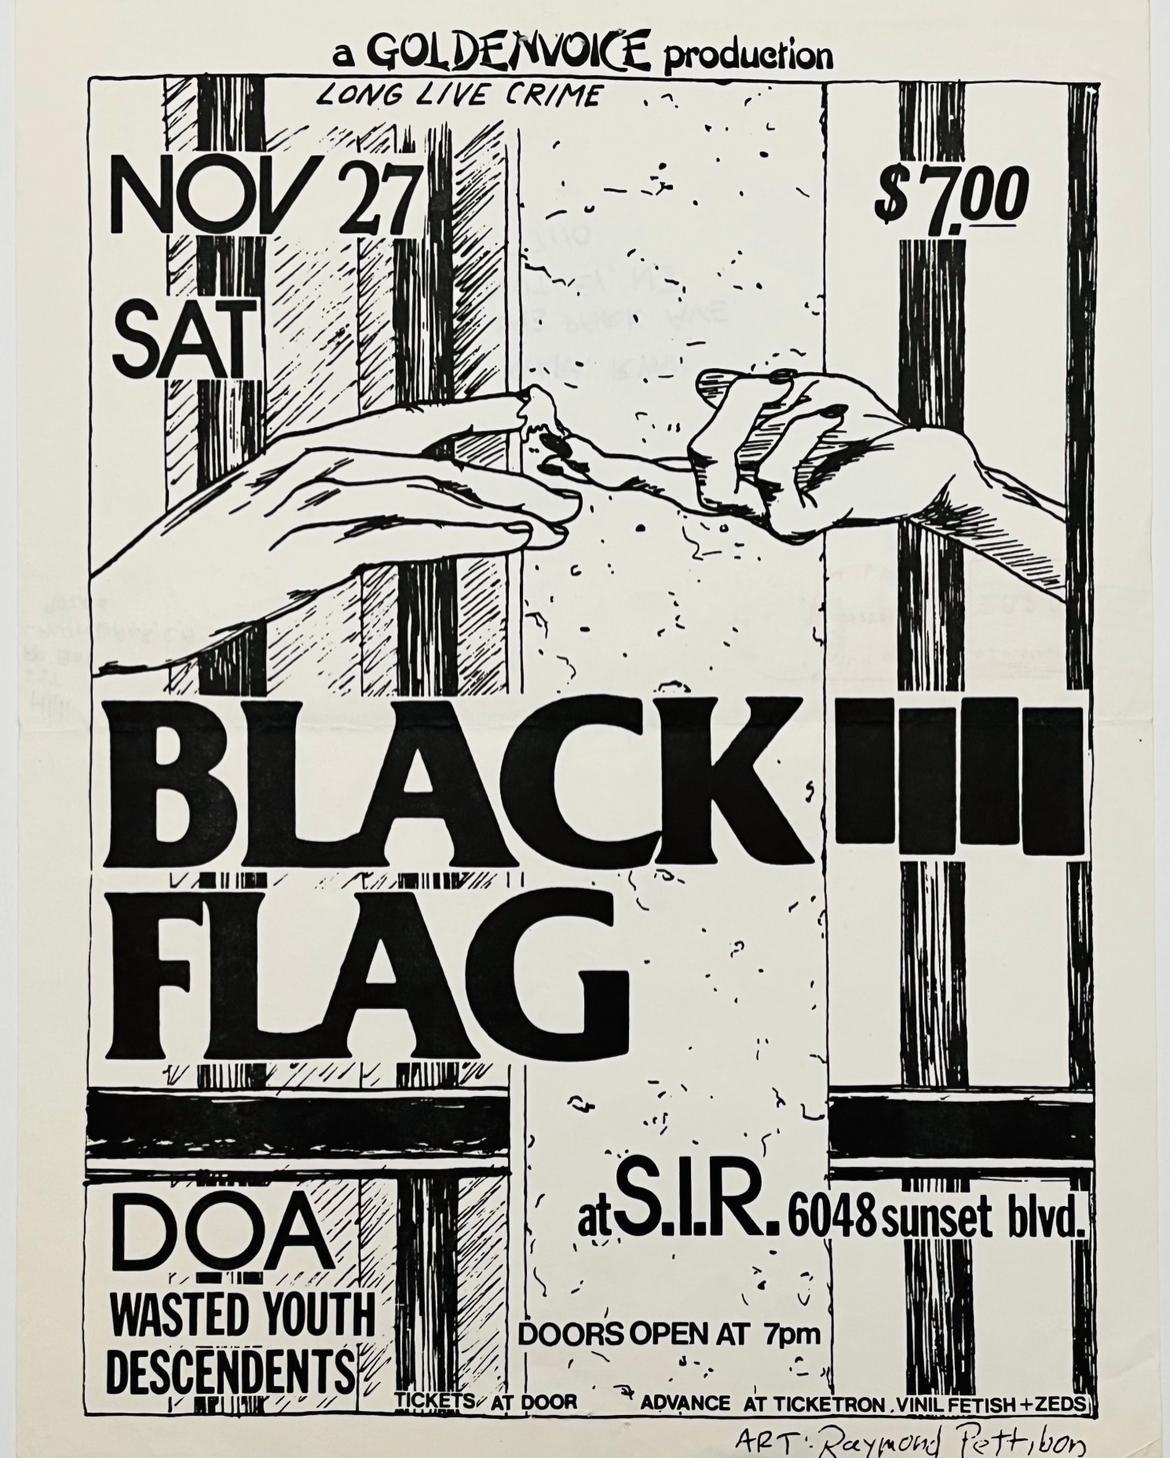 Raymond Pettibon: Seltenes Originalflugblatt von Black Flag aus dem Jahr 1983 (rückseitig abgestempelt):
Black Flag im S.I.R., 27. November 1982: Offsetdruck, 11 x 8,5 Zoll. (28 x 21,6 cm); Flyer / Handzettel für ein Konzert von Black Flag, DOA,